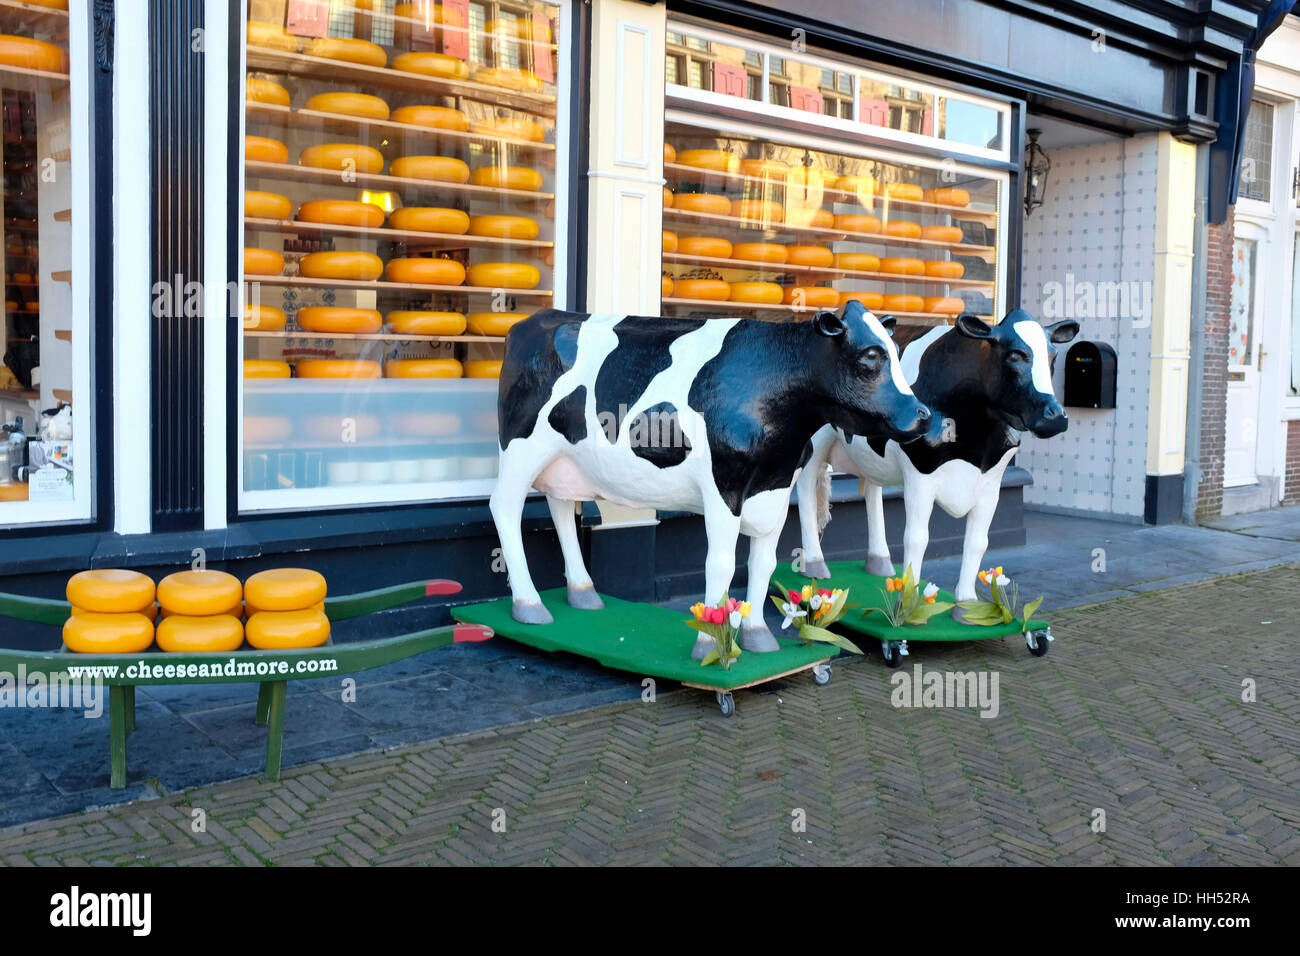 Dutch Cheese Shop, ville de Delft, Pays-Bas. Banque D'Images